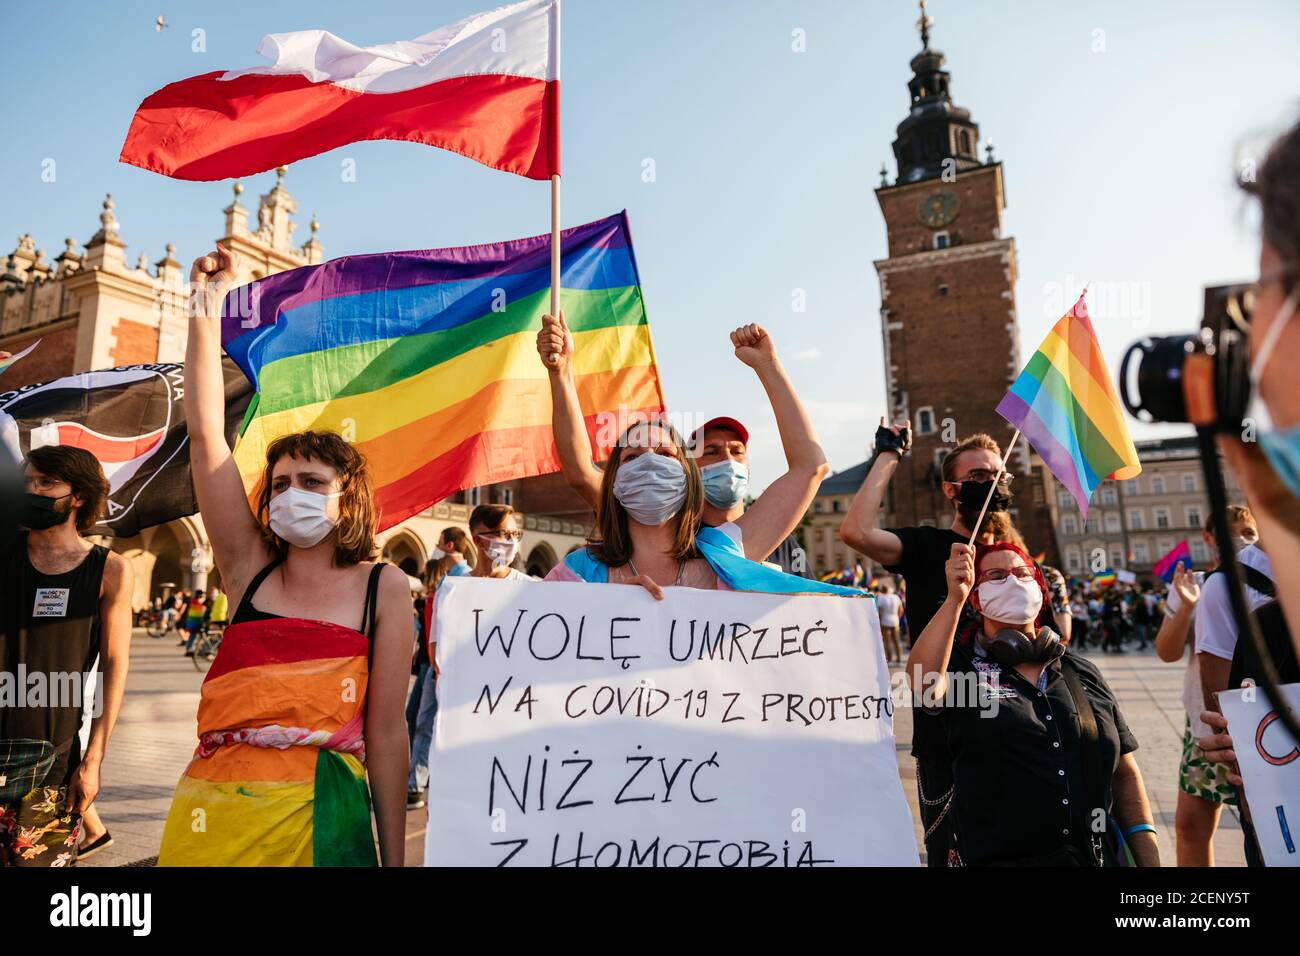 I membri della comunità LGBTQ hanno un cartello dicendo che preferisco morire dal Covid-19 dopo la protesta che vivere con omofobia prima del marzo.la marcia annuale sull'uguaglianza, conosciuta anche come Pride Parade, ha attratto un numero particolarmente elevato di partecipanti, così come due contromonomonuonate. In Polonia, recentemente si è svolto un acceso dibattito pubblico tra sostenitori della tolleranza, con una visione di centro o di sinistra, e circoli conservatori, nazionalisti e cattolici di destra, che stanno esprimendo la loro avversione alla comunità LGBT in modo sempre più spietato. Gli oppositori della comunità LGBT accusano i Foto Stock